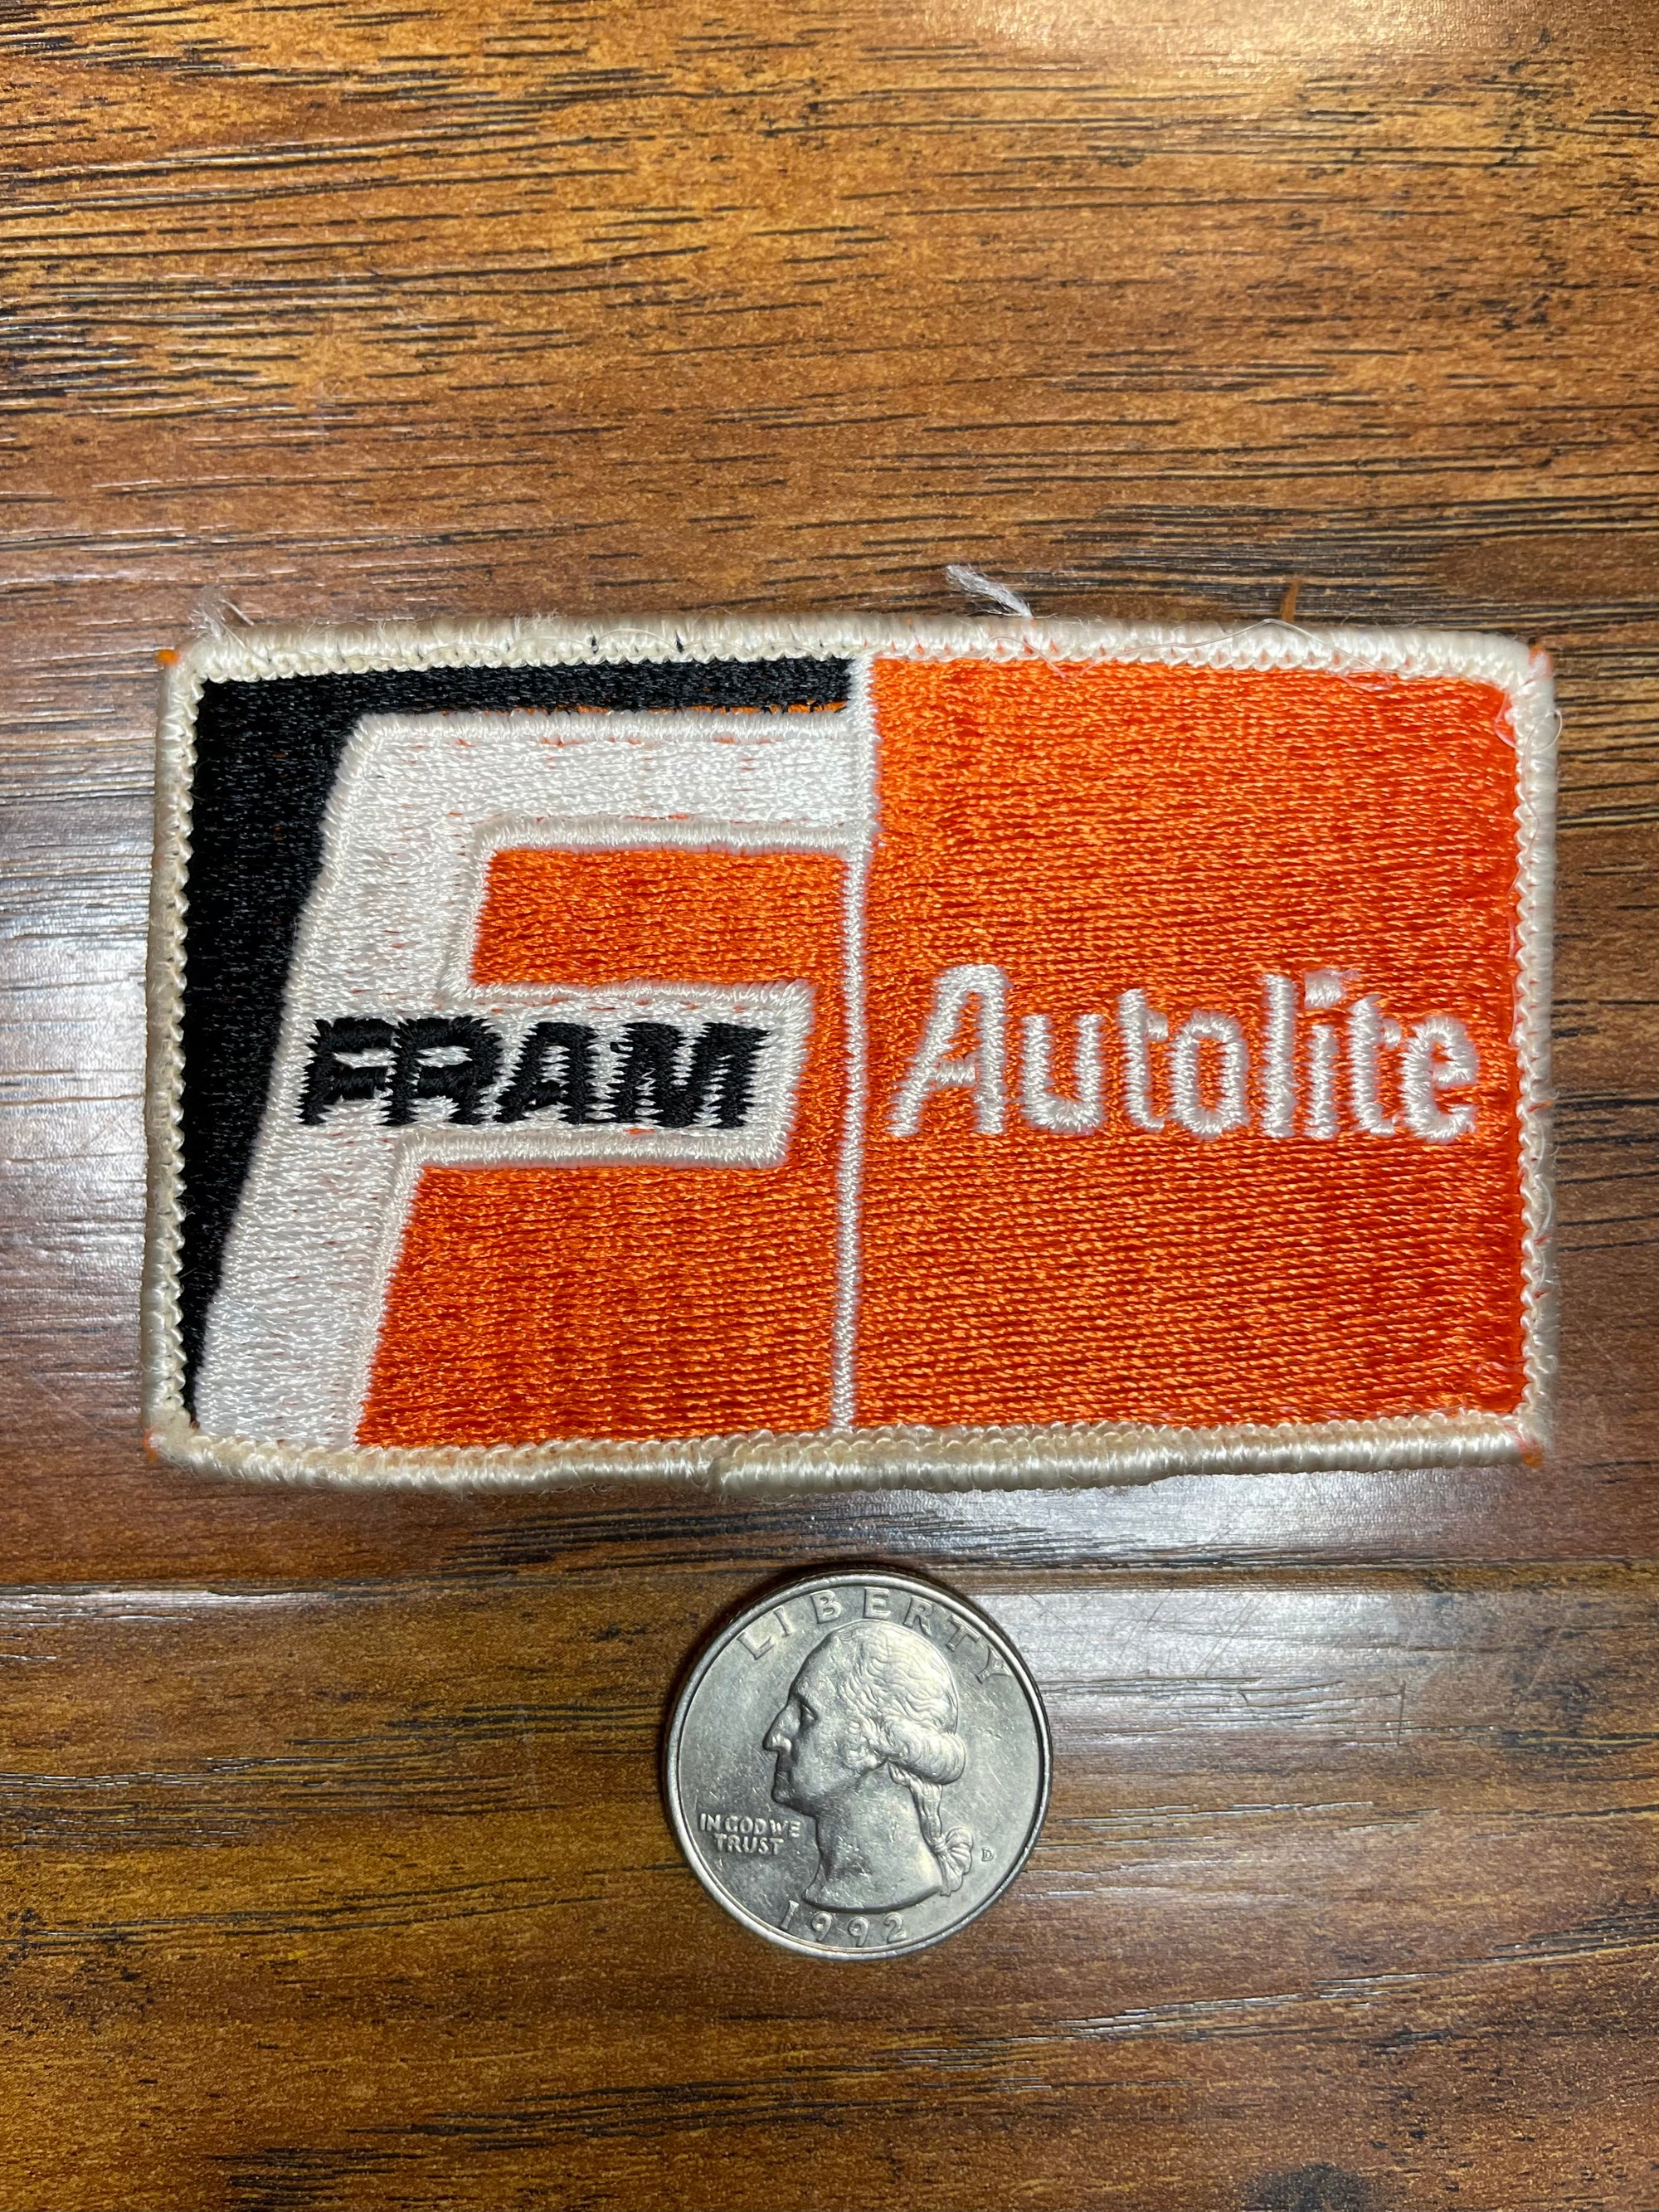 Vintage Fram Autolite